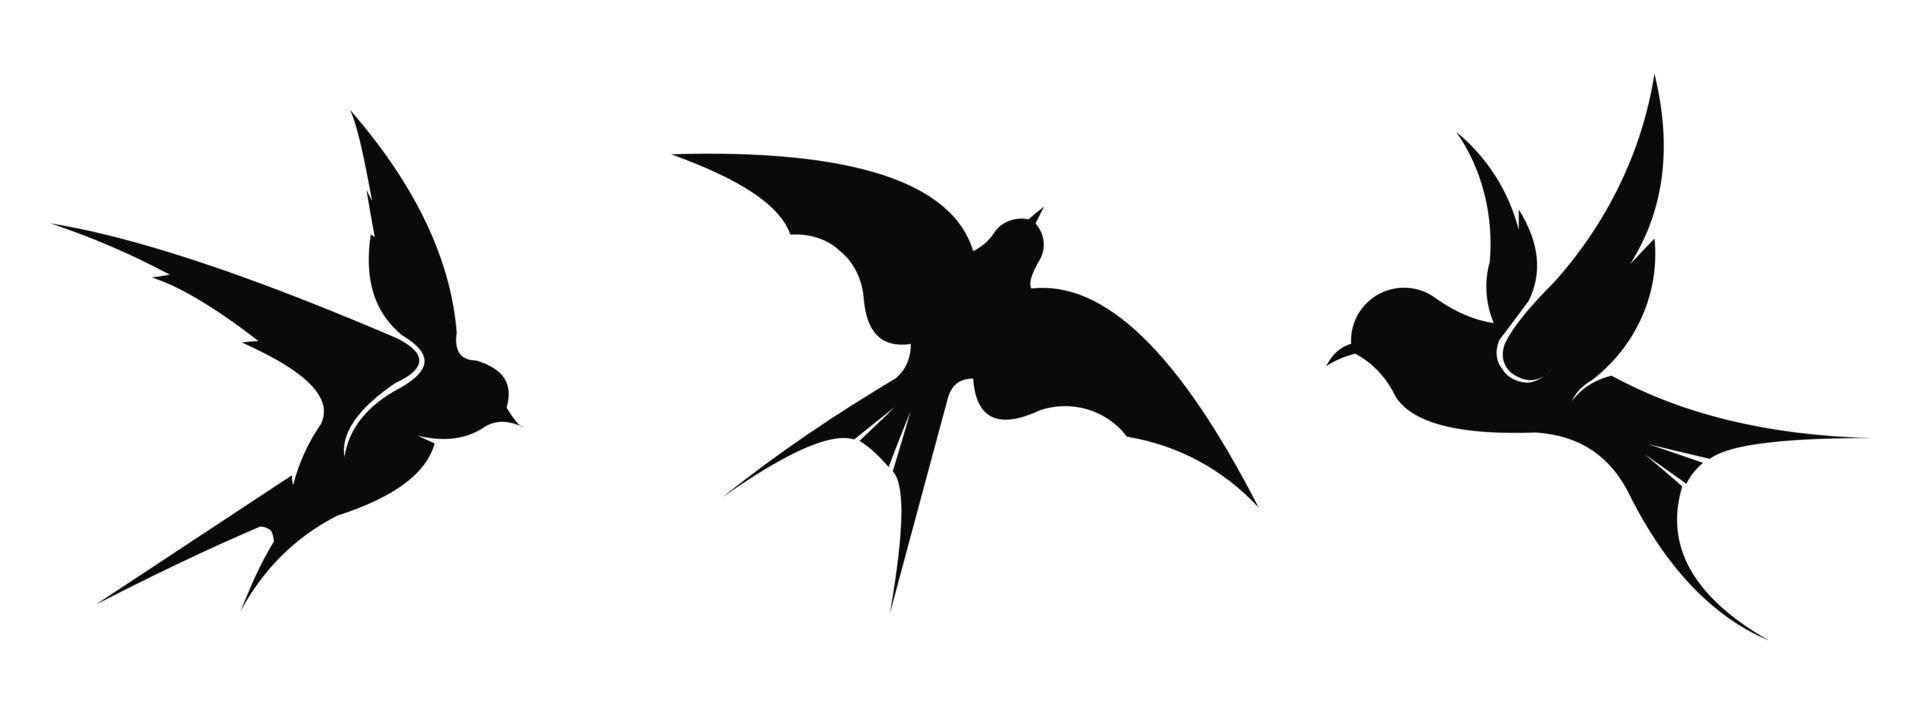 silhouette di uccelli in volo su sfondo bianco, uccelli primaverili o uccelli veloci nella folla del cielo vola. vettore